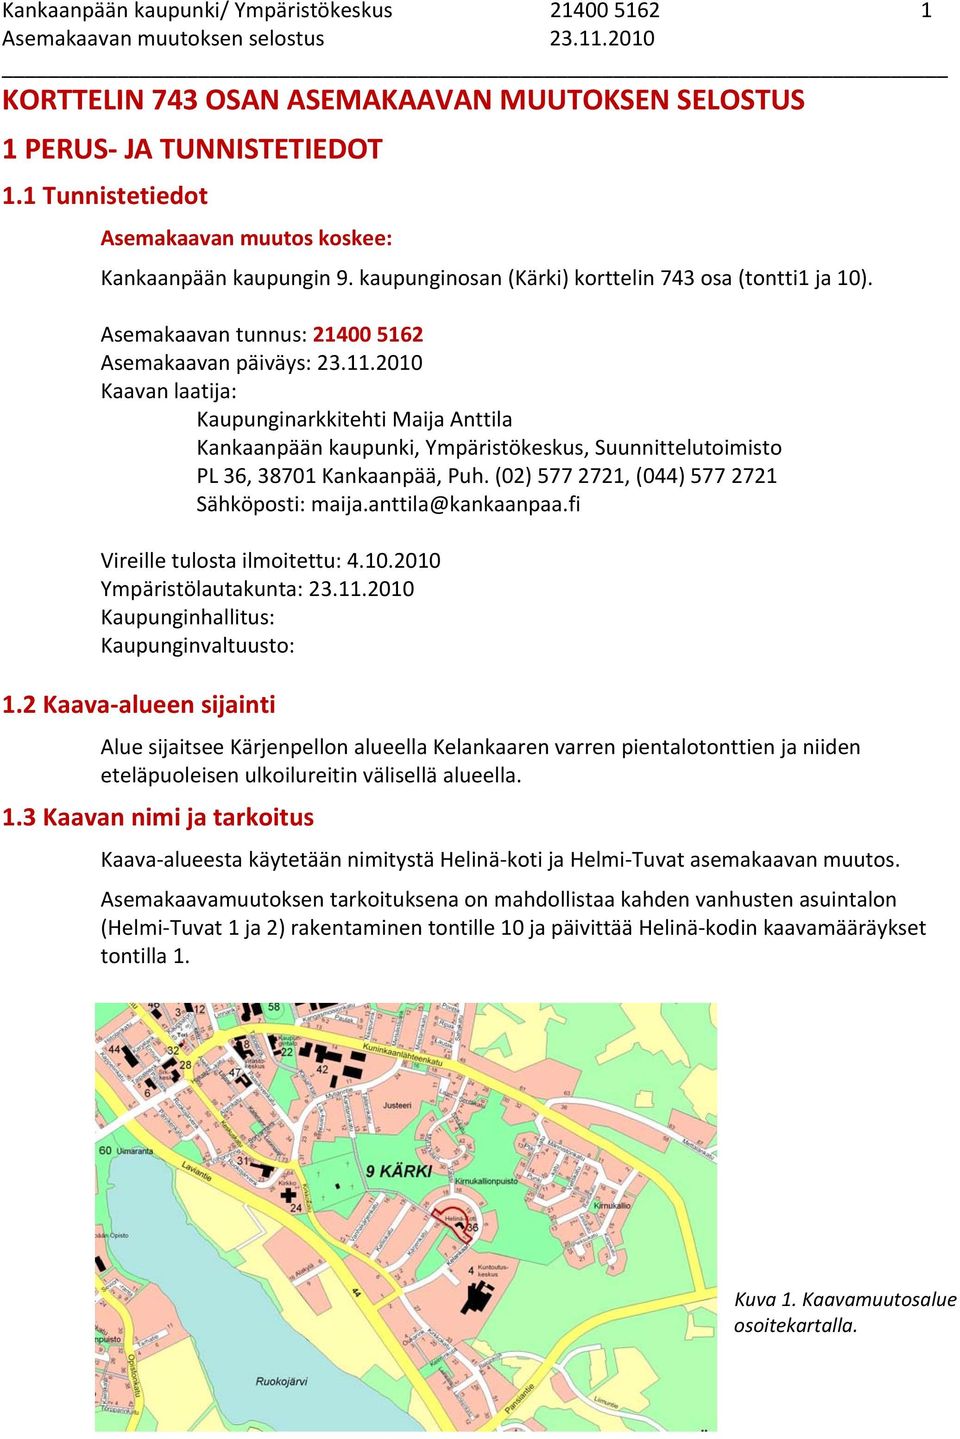 2010 Kaavan laatija: Kaupunginarkkitehti Maija Anttila Kankaanpään kaupunki, Ympäristökeskus, Suunnittelutoimisto PL 36, 38701 Kankaanpää, Puh. (02) 577 2721, (044) 577 2721 Sähköposti: maija.